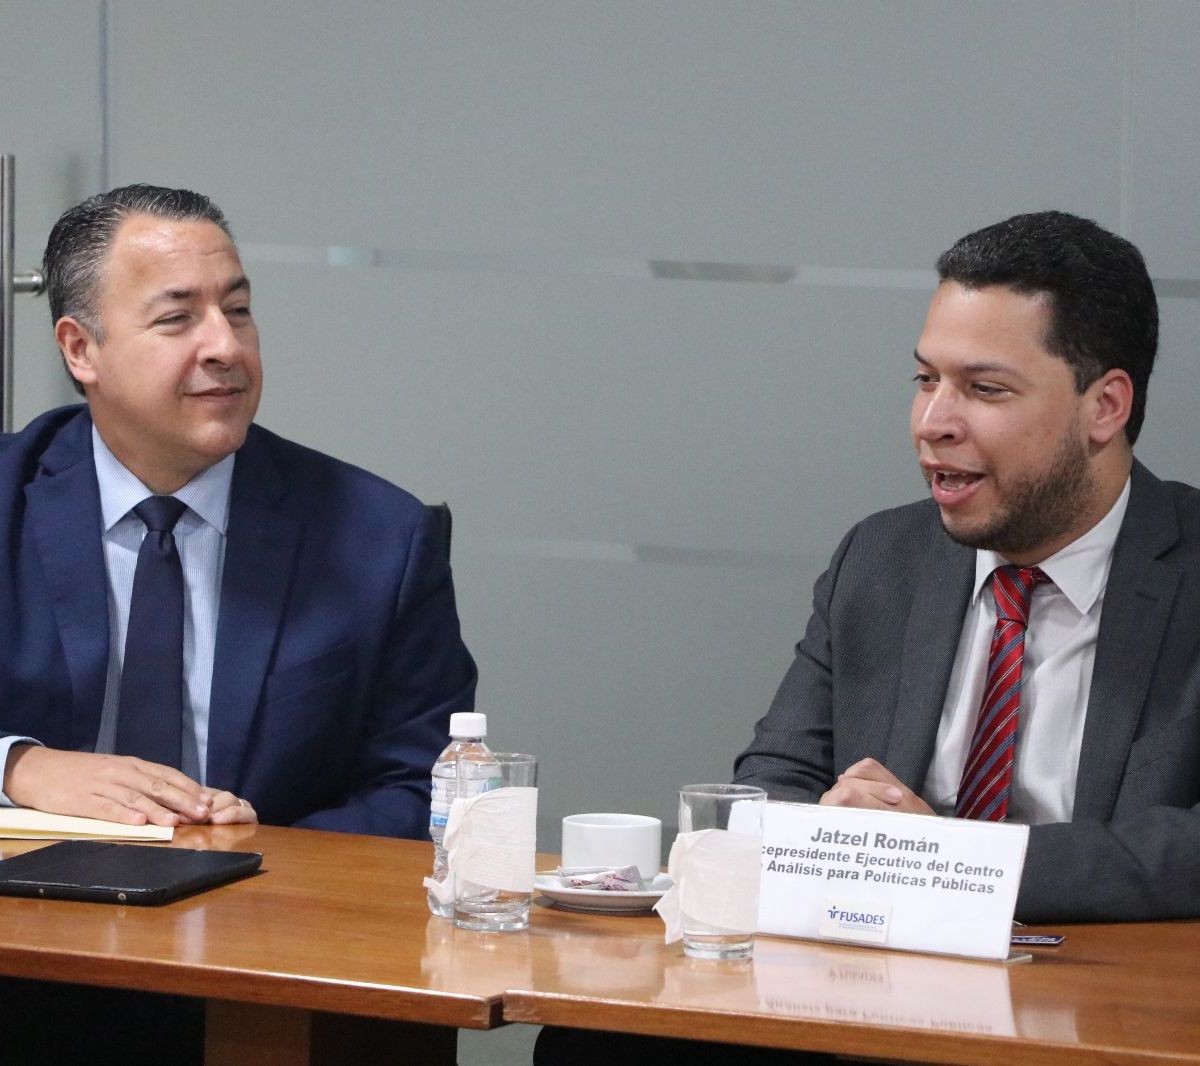 Jatzel Román aborda en El Salvador agenda política electoral del 2024 de RD –  (República Dominicana)